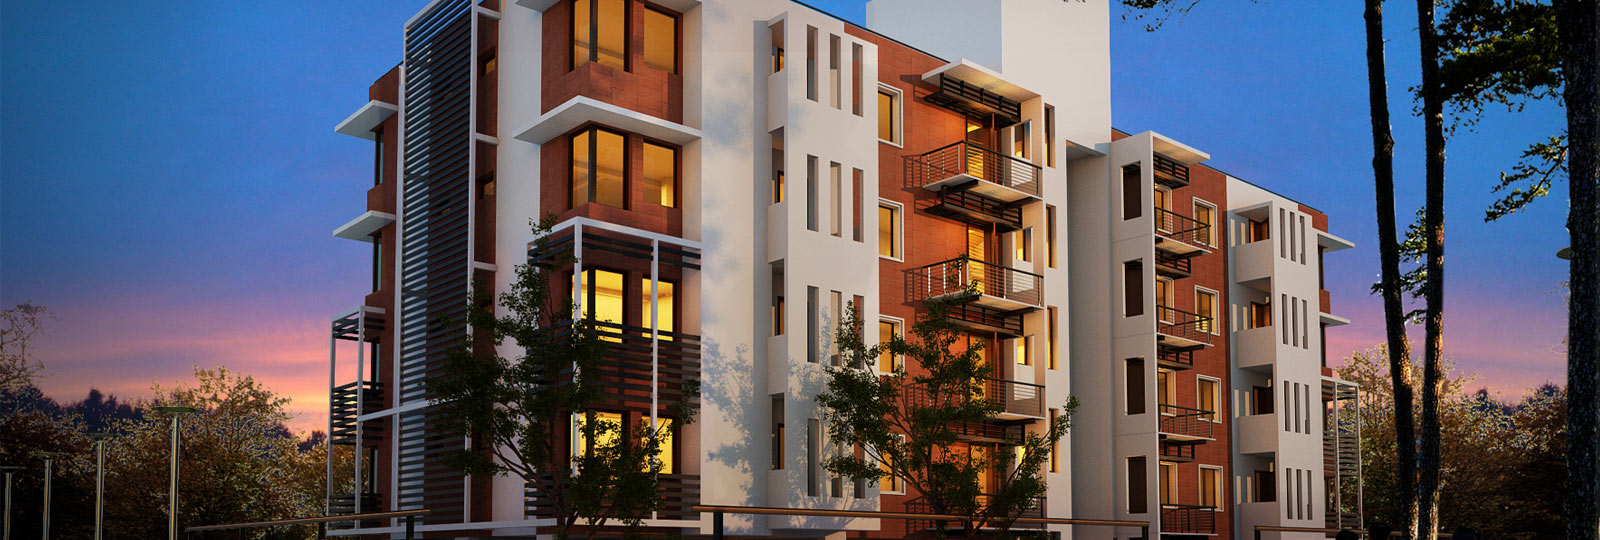 banglore-flats-apartments